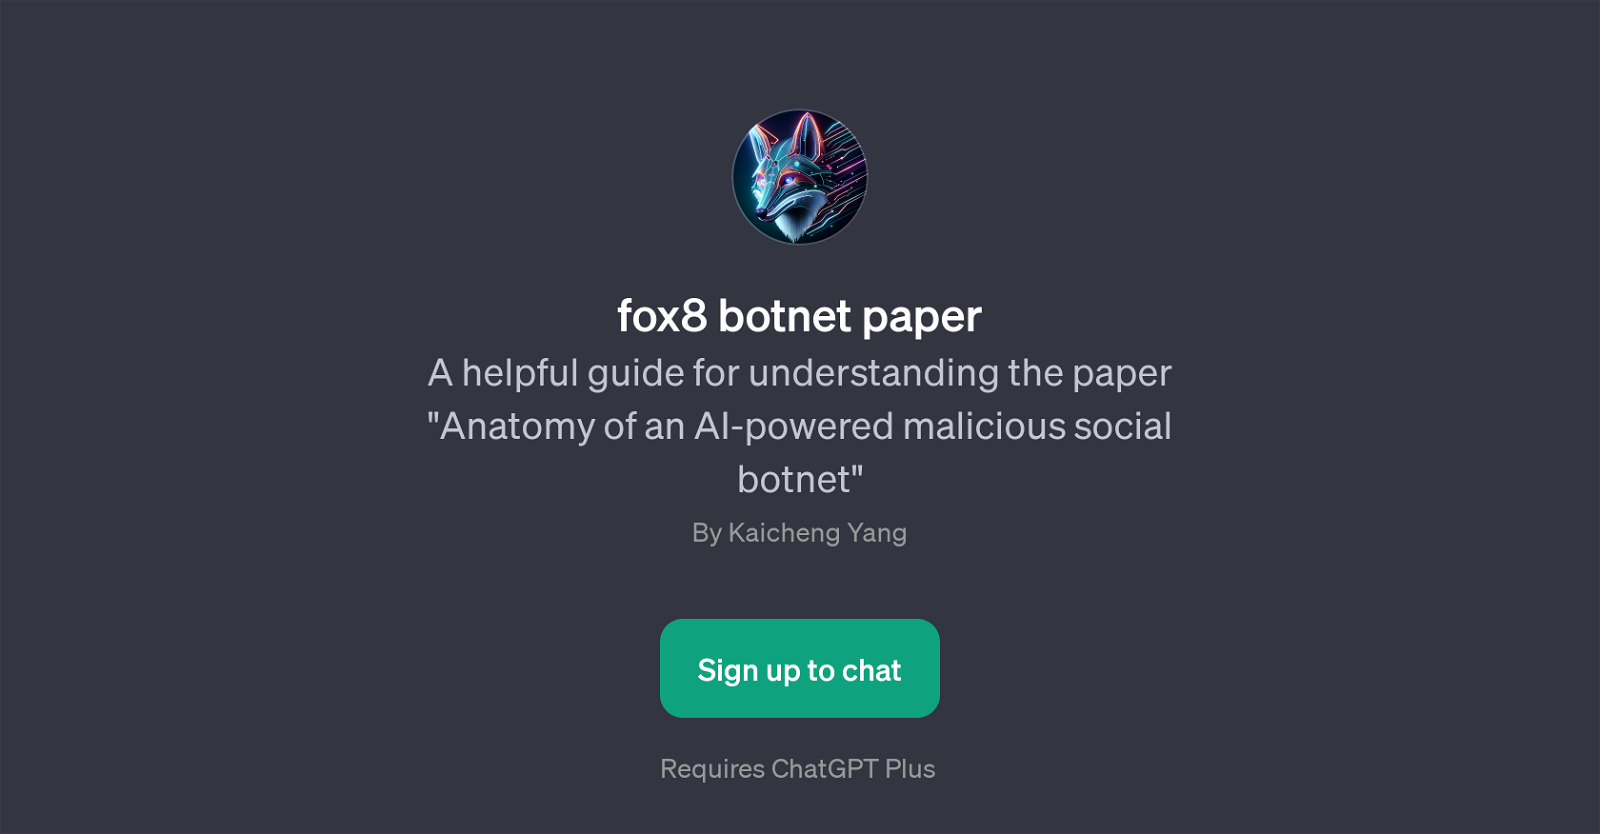 fox8 botnet paper website